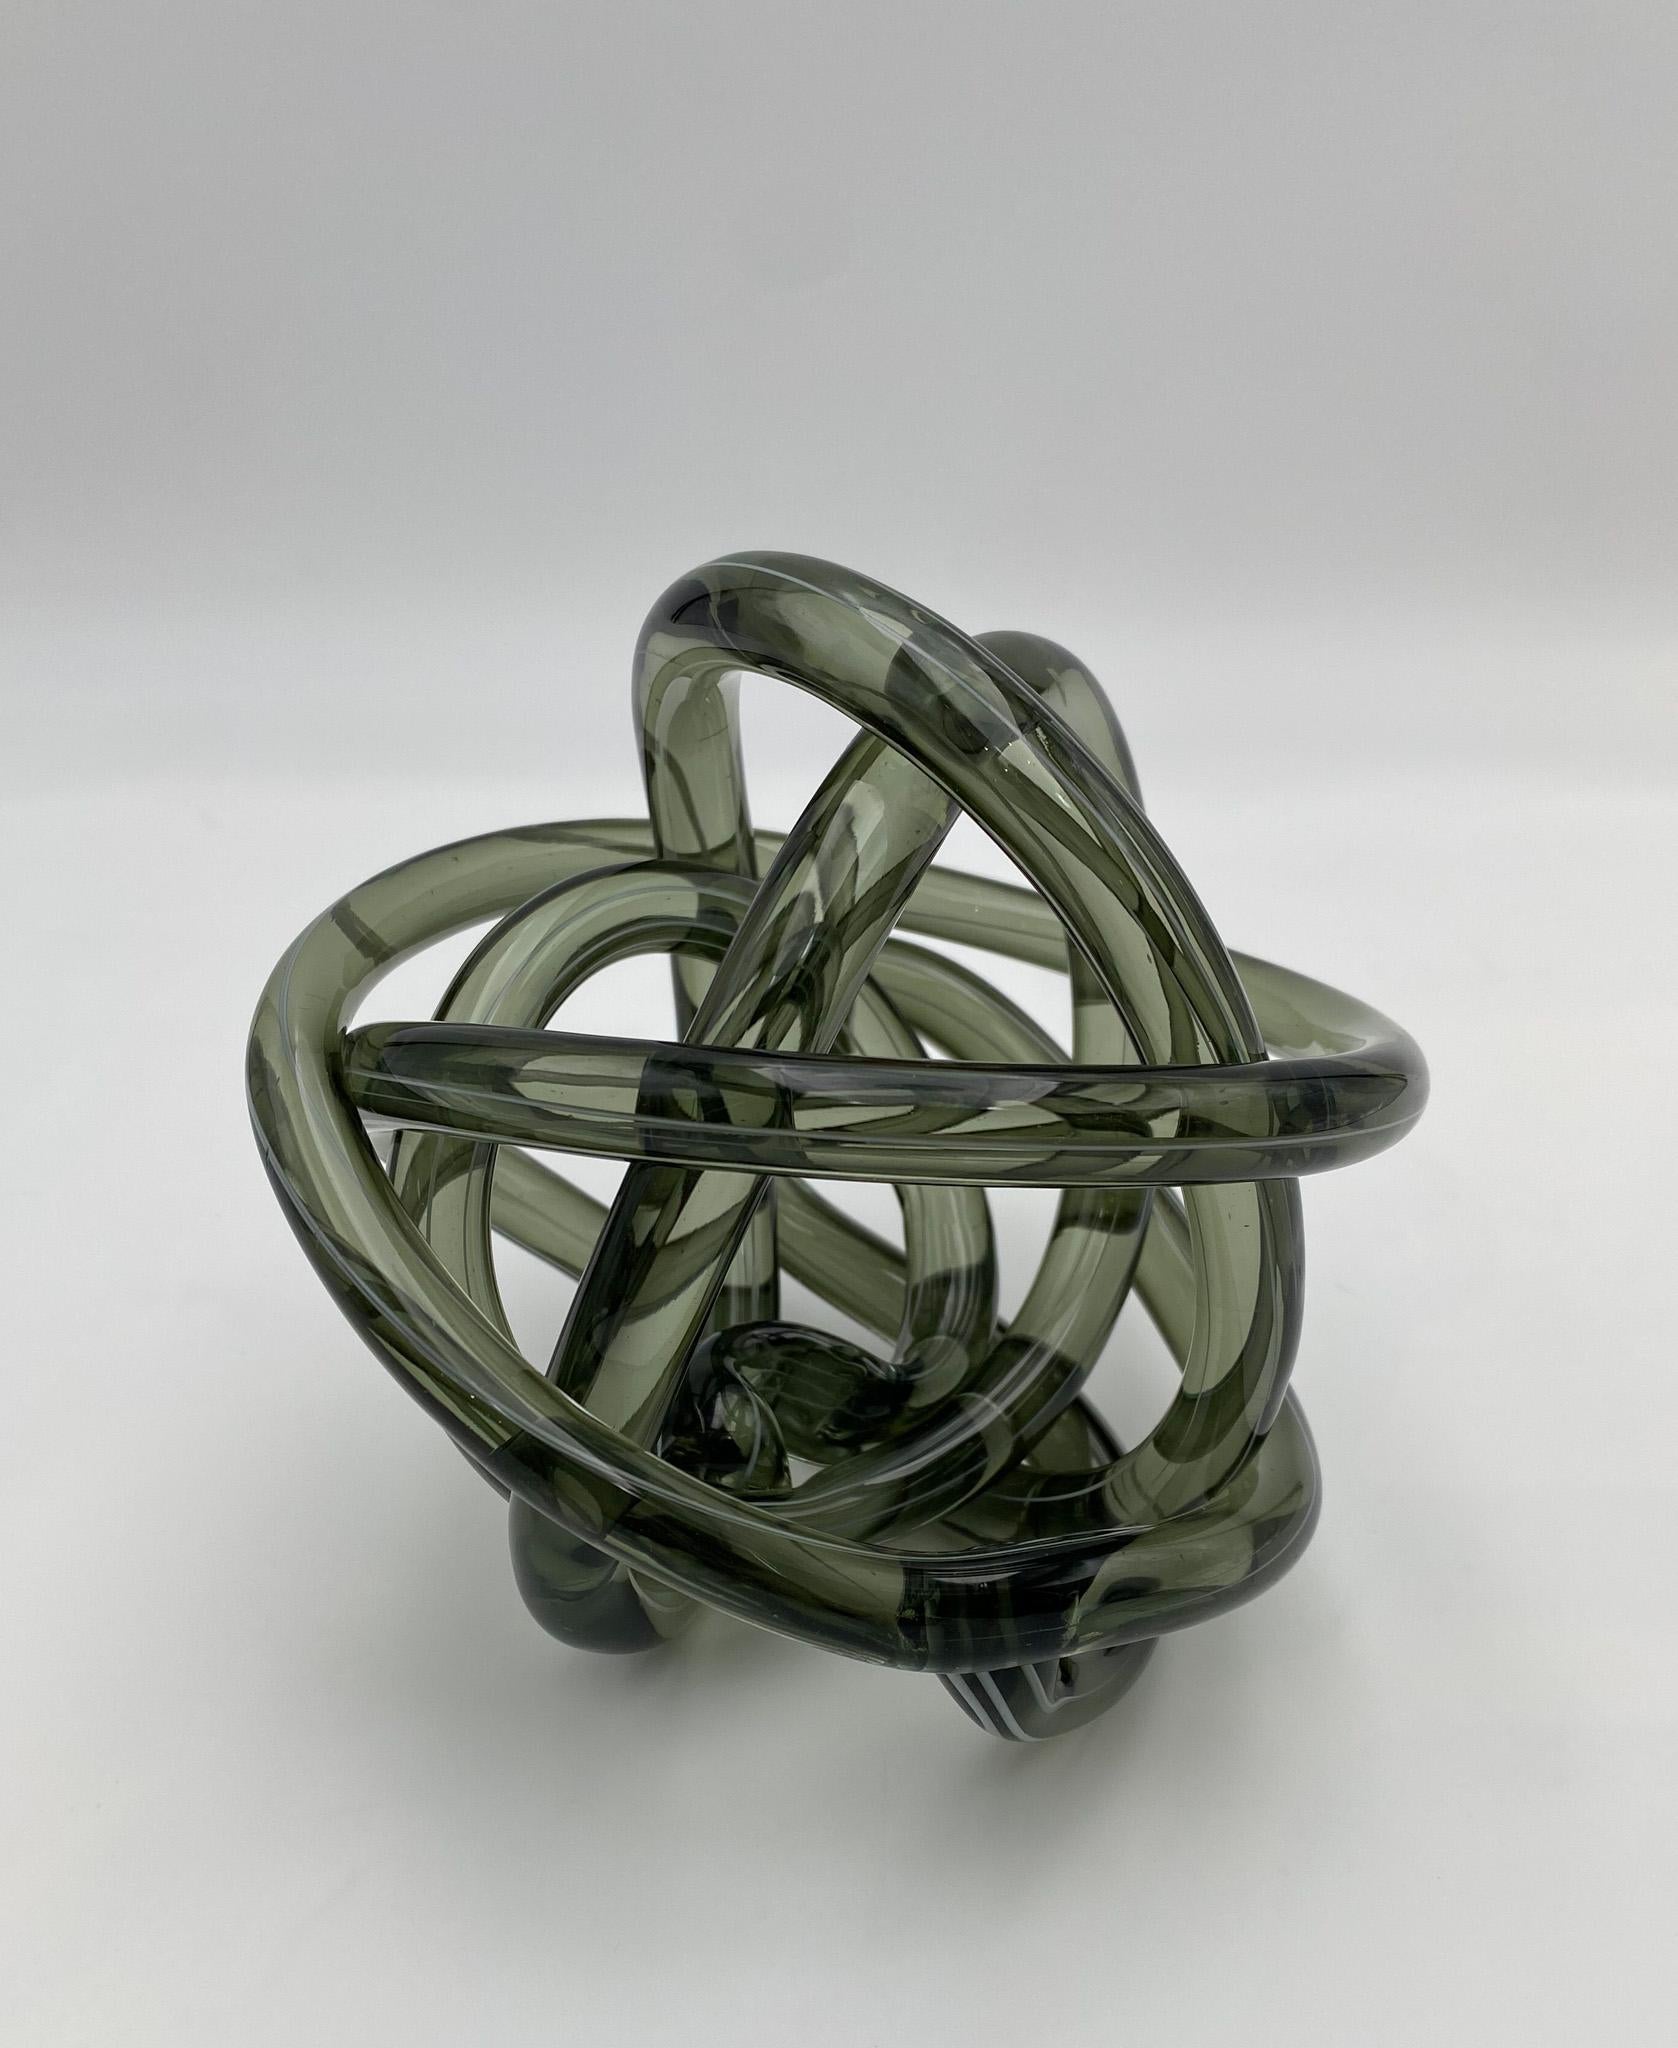 Abstract Glass Art Knot Sculpture, 1990's.   